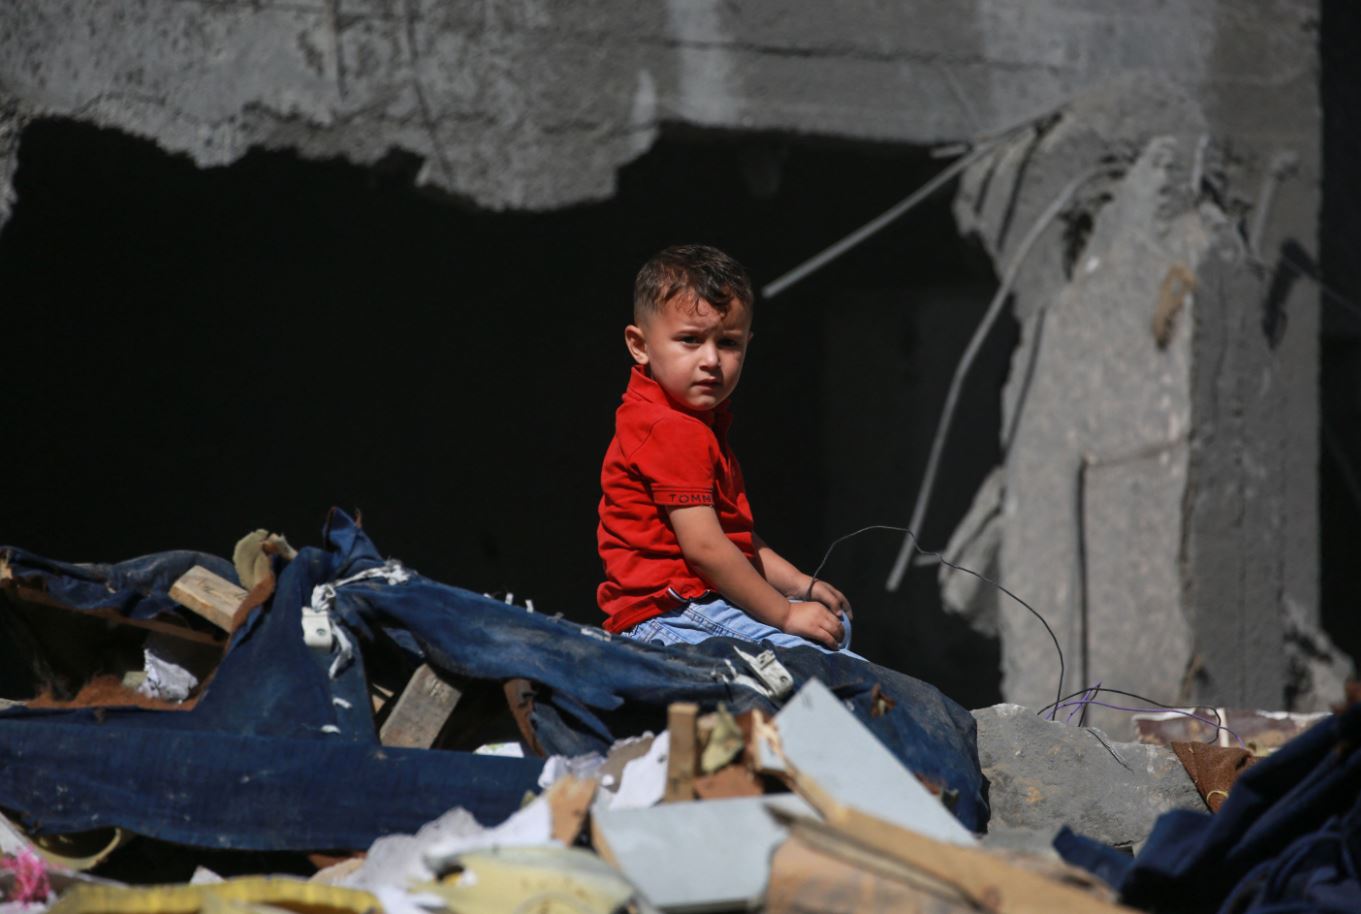 قوات إسرائيلية تواصل التوغل في رفح وتقتل 17 شخصاً في مخيمات بوسط غزة